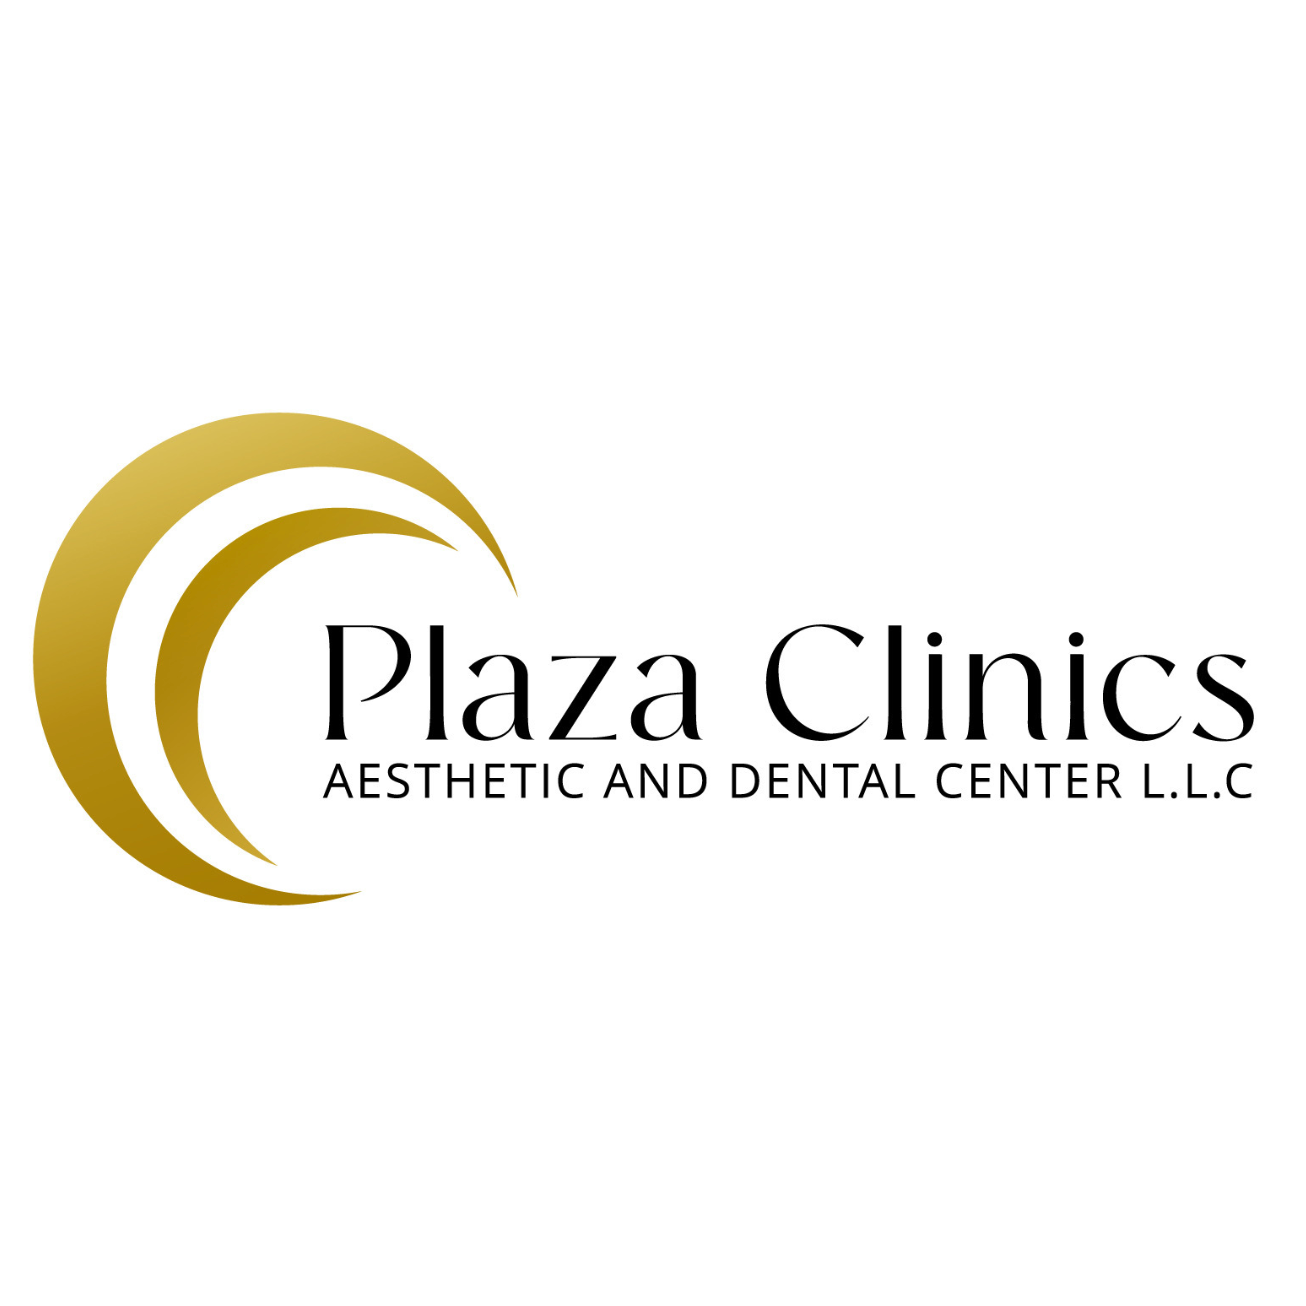 Plaza Clinics